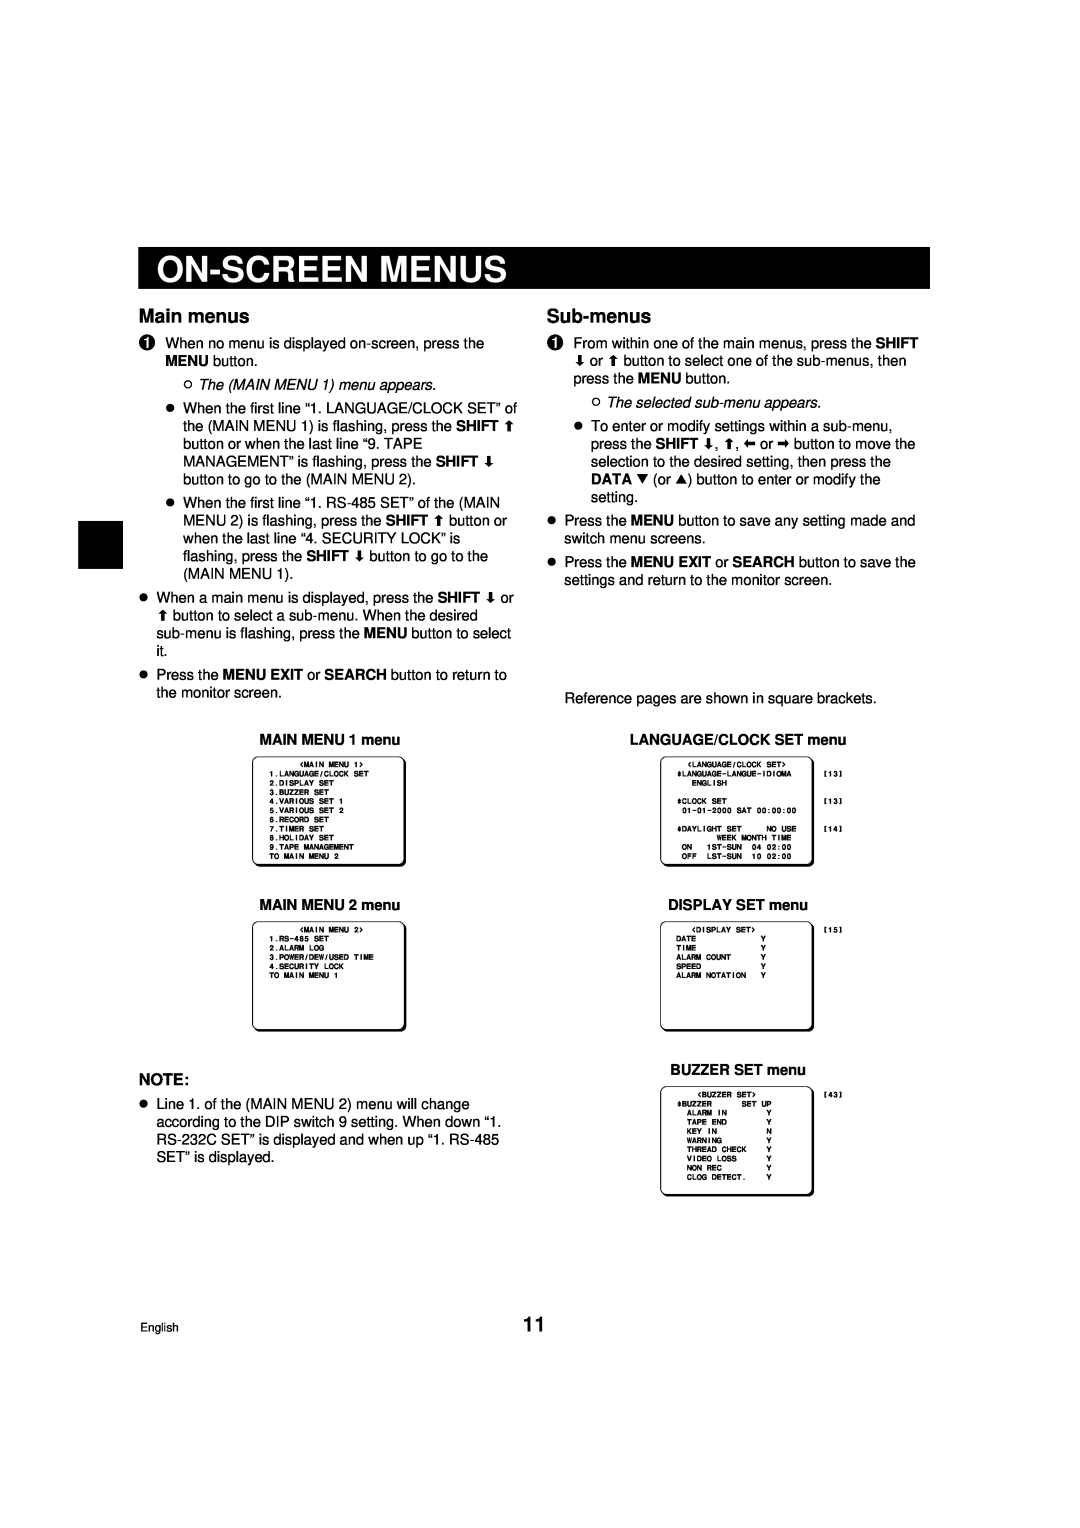 Sanyo DTL-4800 On-Screen Menus, Main menus, Sub-menus, ø The MAIN MENU 1 menu appears, ø The selected sub-menu appears 